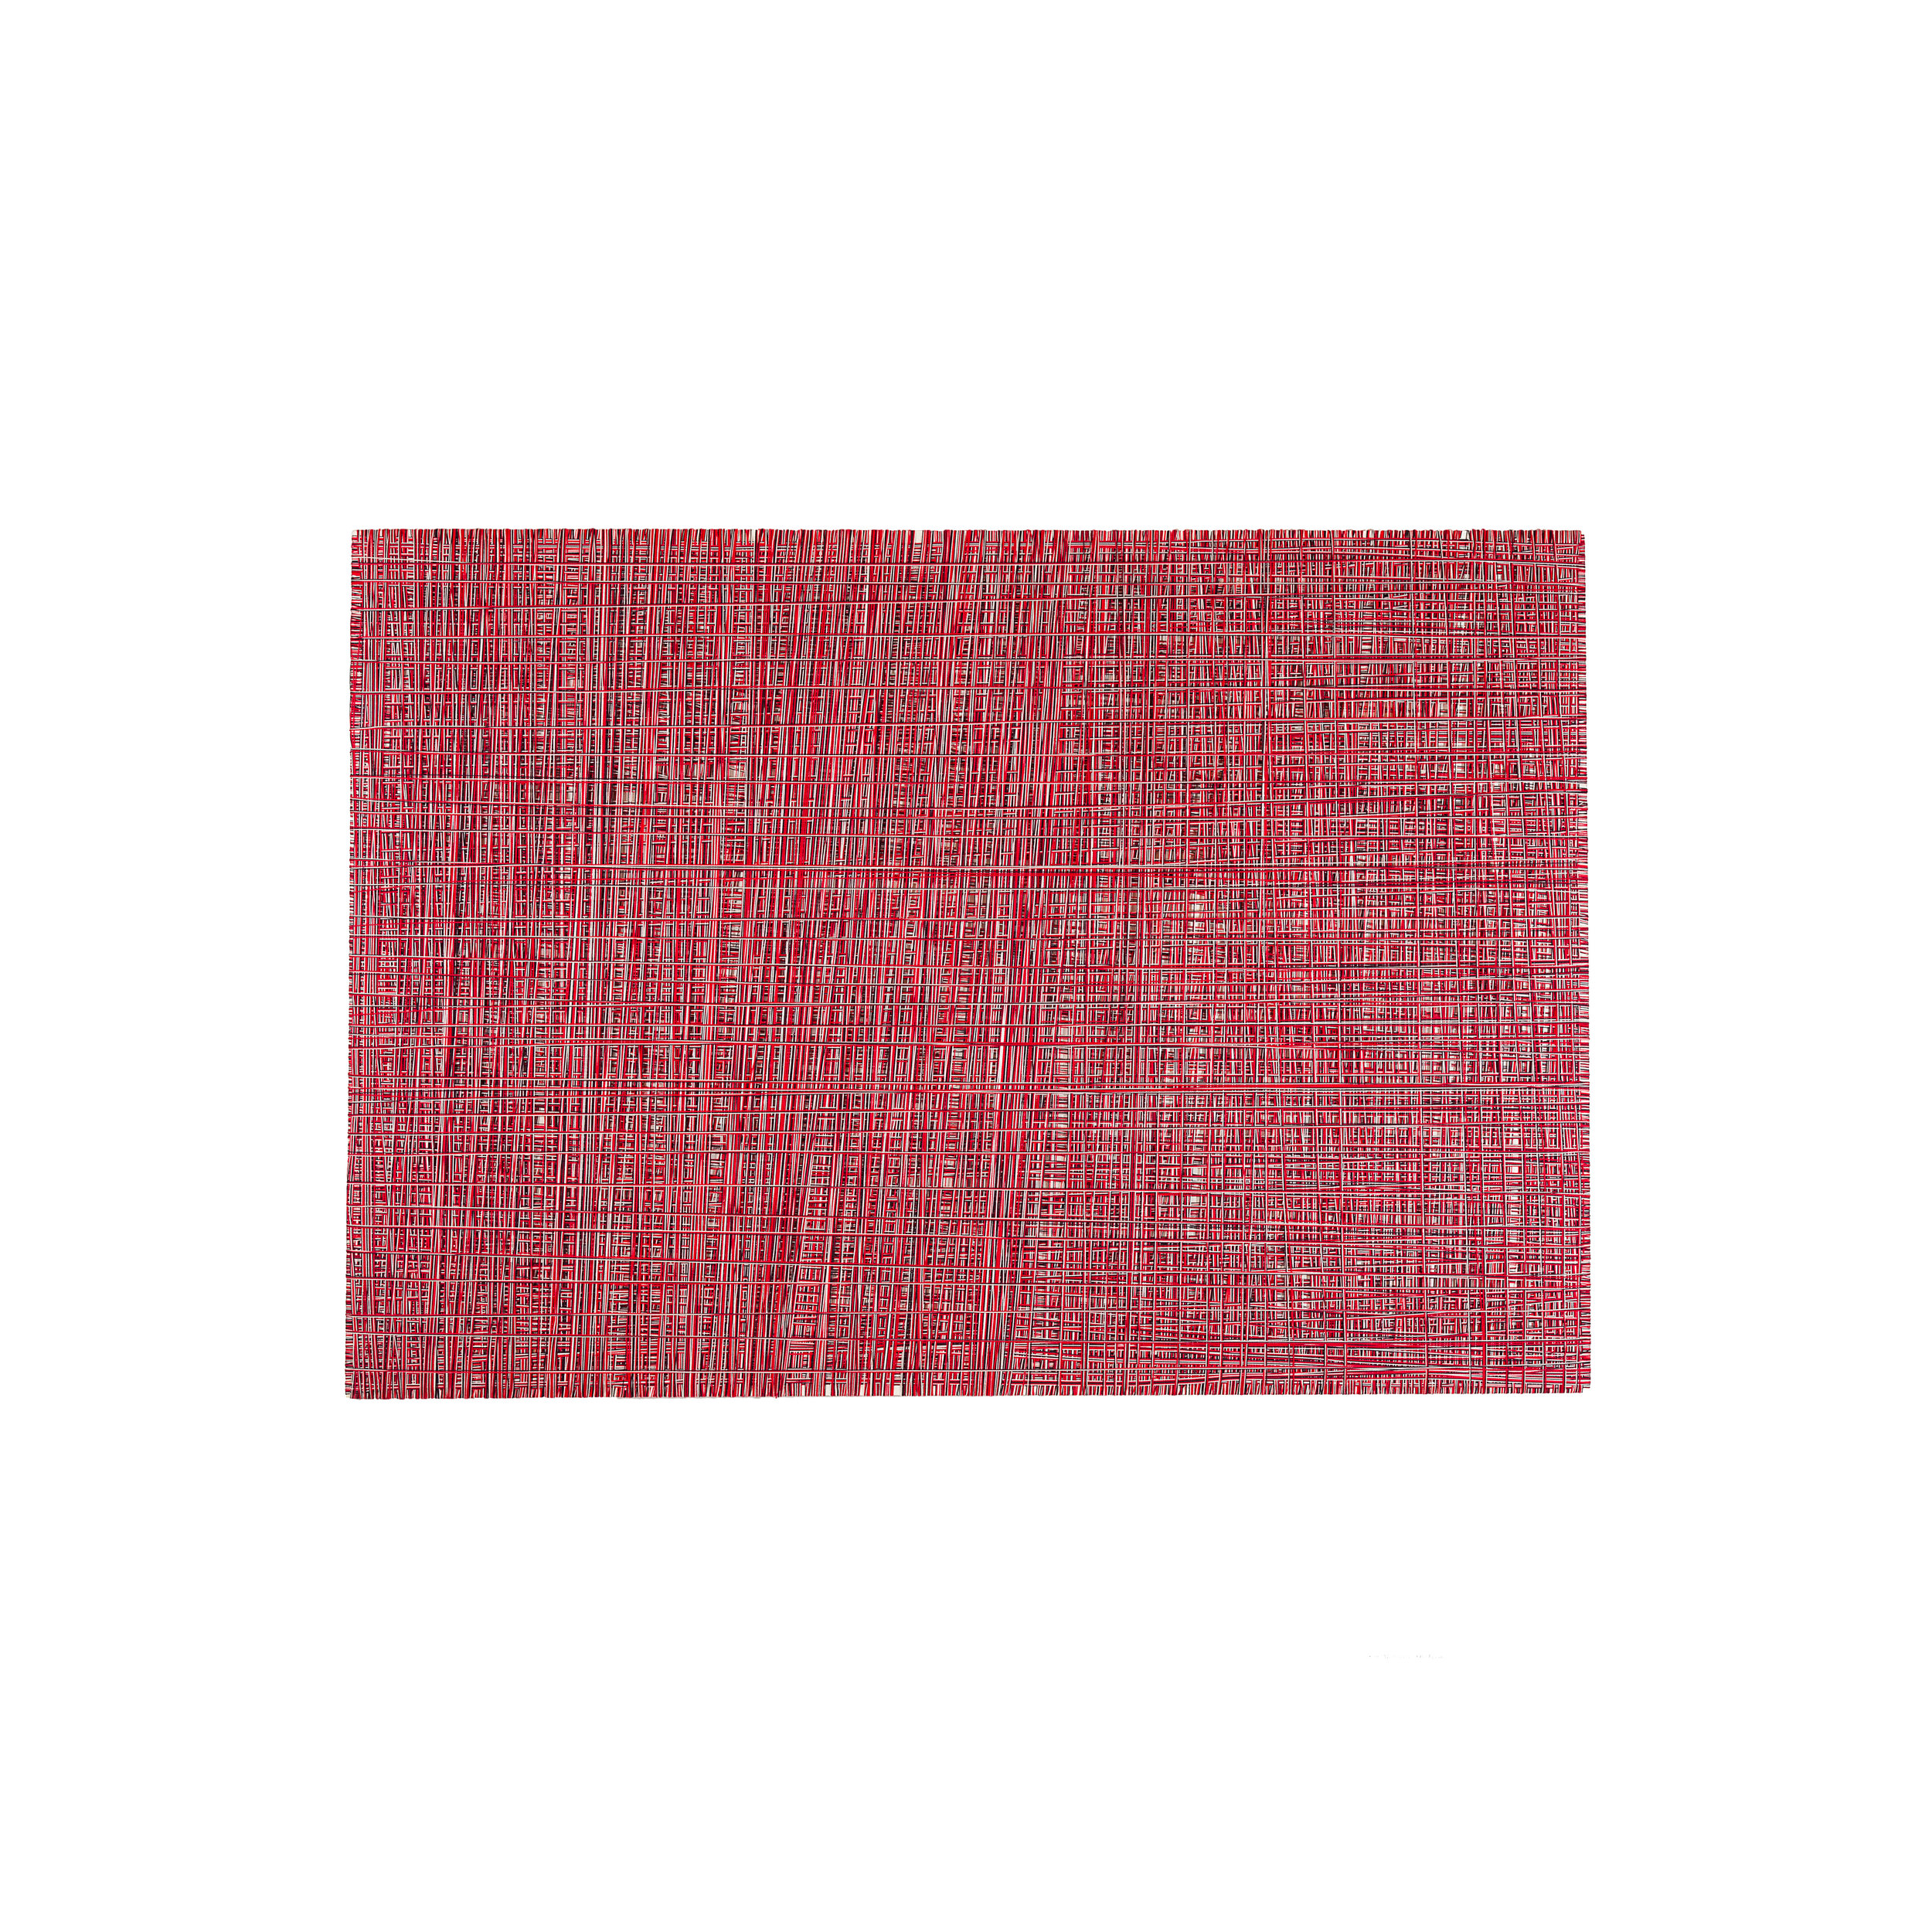 Griglia, filo di cotone su legno, cm 80 x 100, anno 2010 .jpg